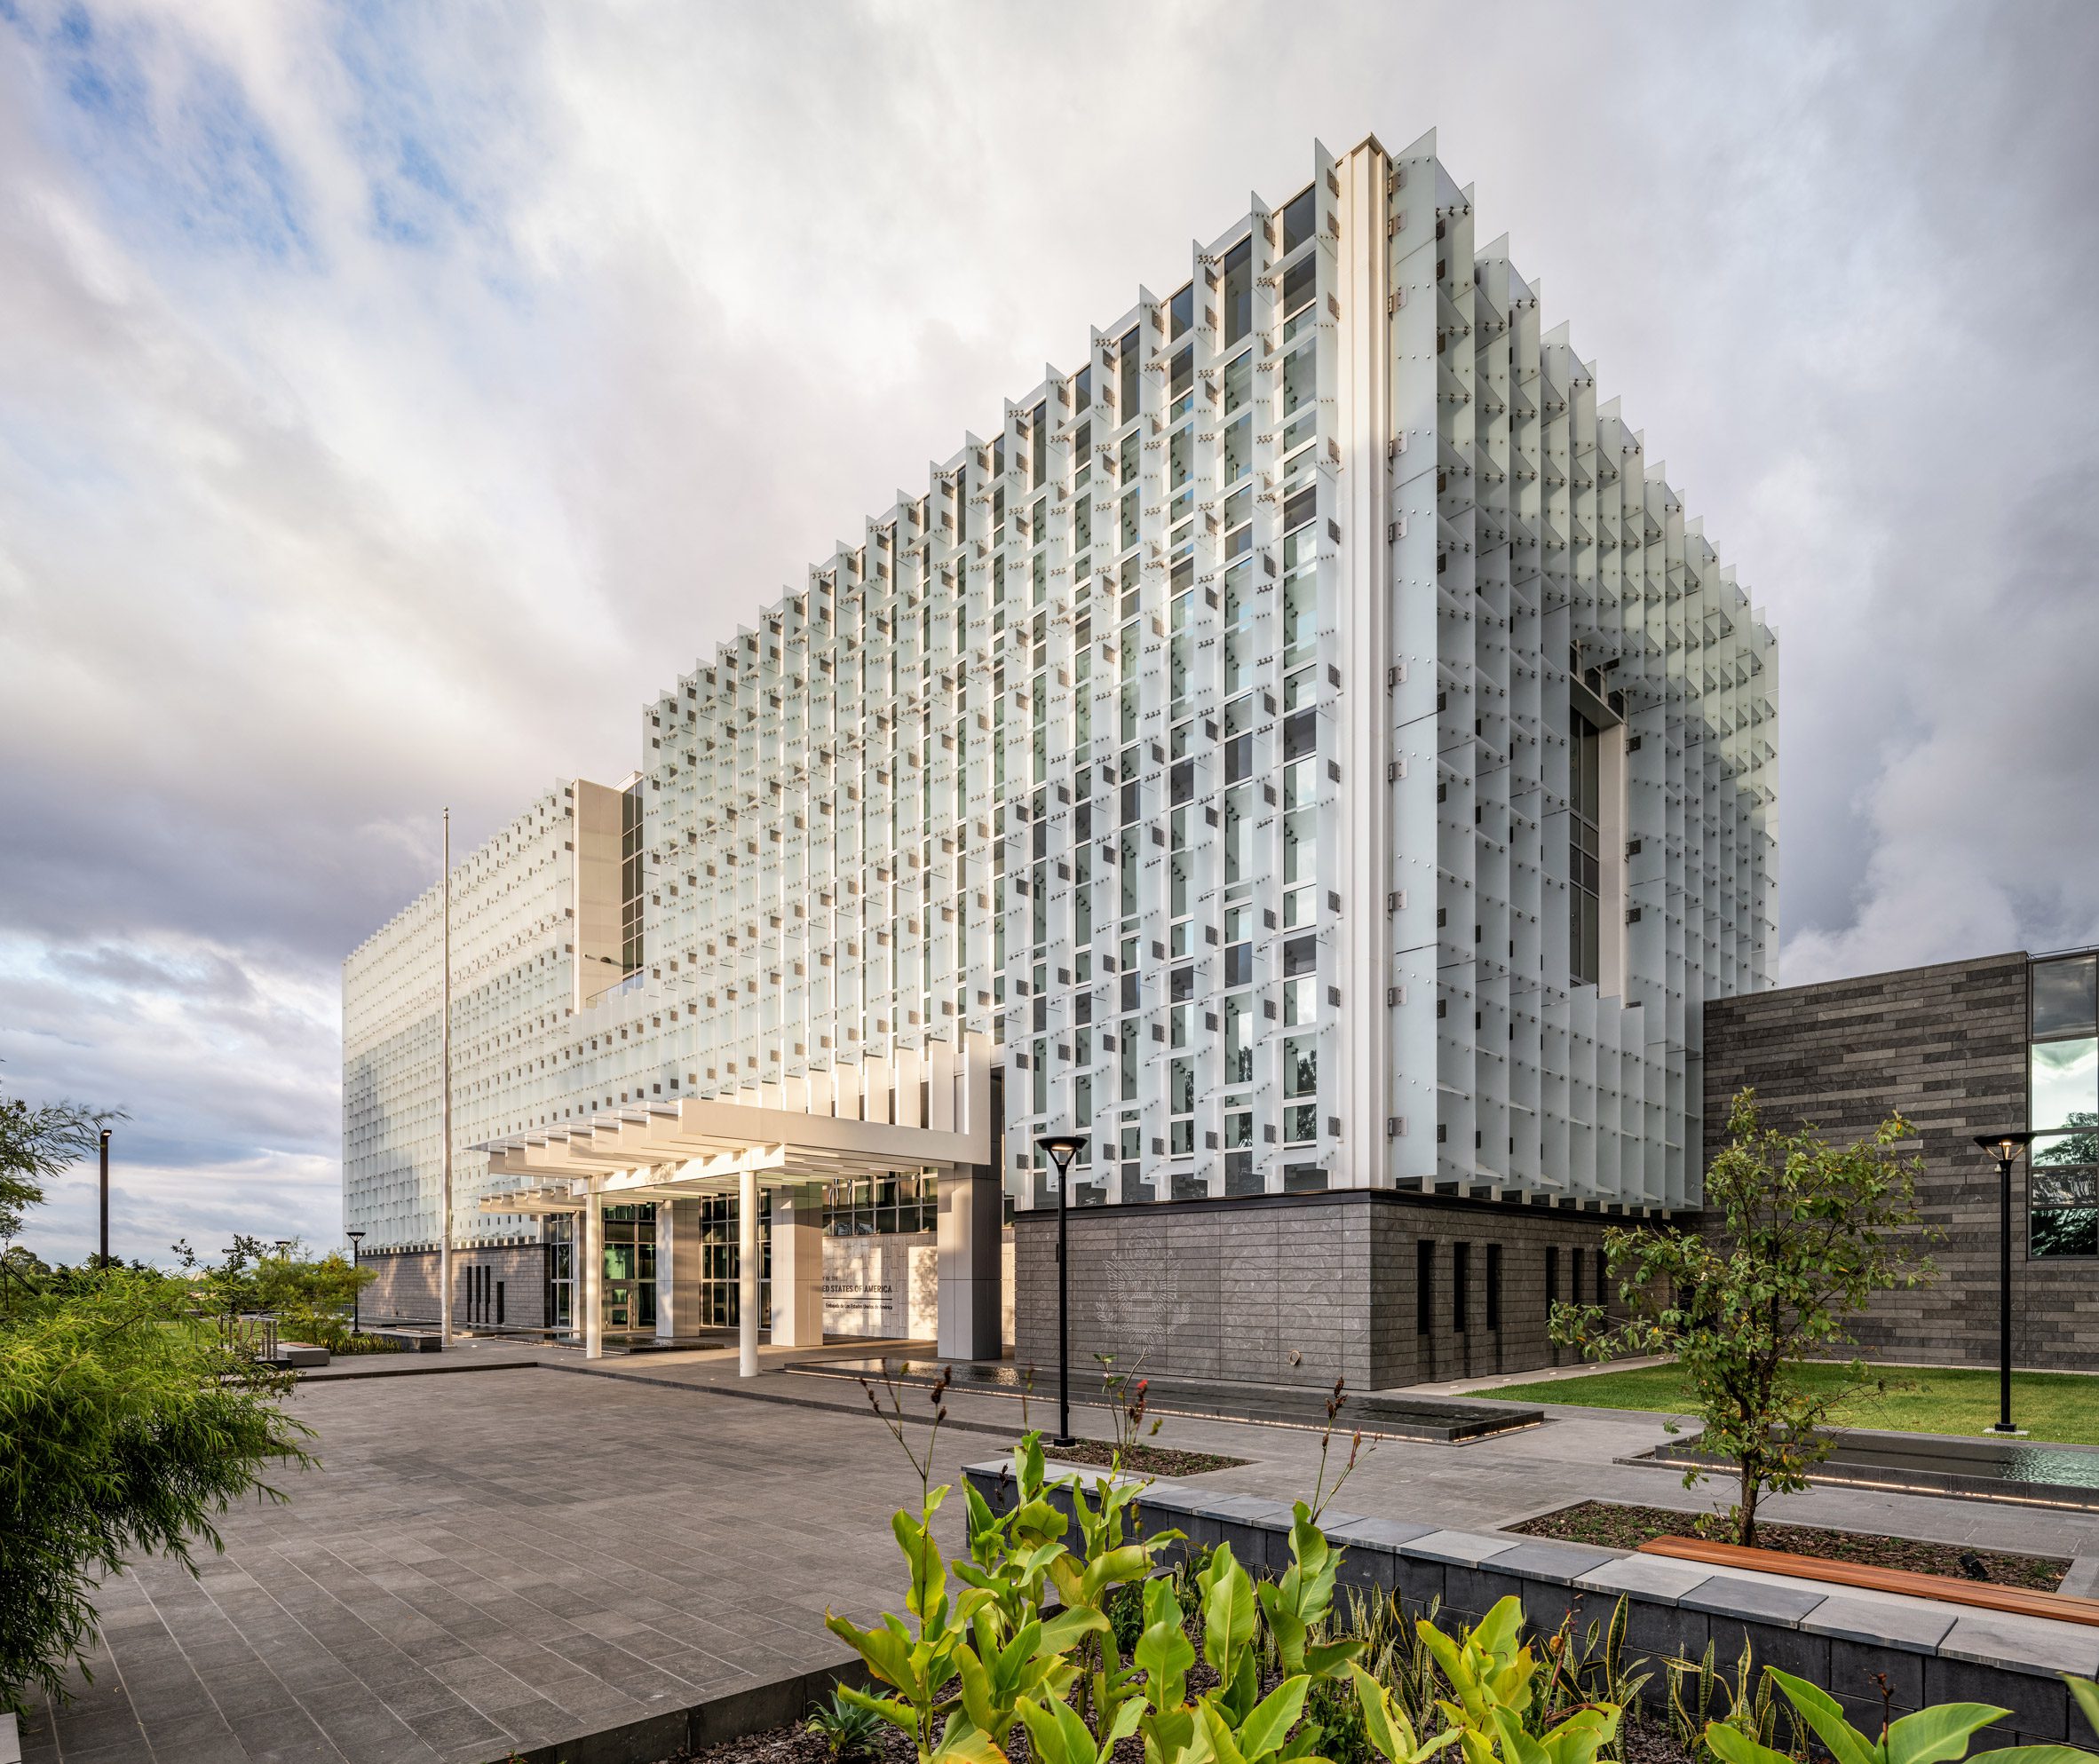 民主和玛雅建筑为Miller Hull在危地马拉城的美国大使馆提供信息|ART-Arrakis | 建筑室内设计的创新与灵感